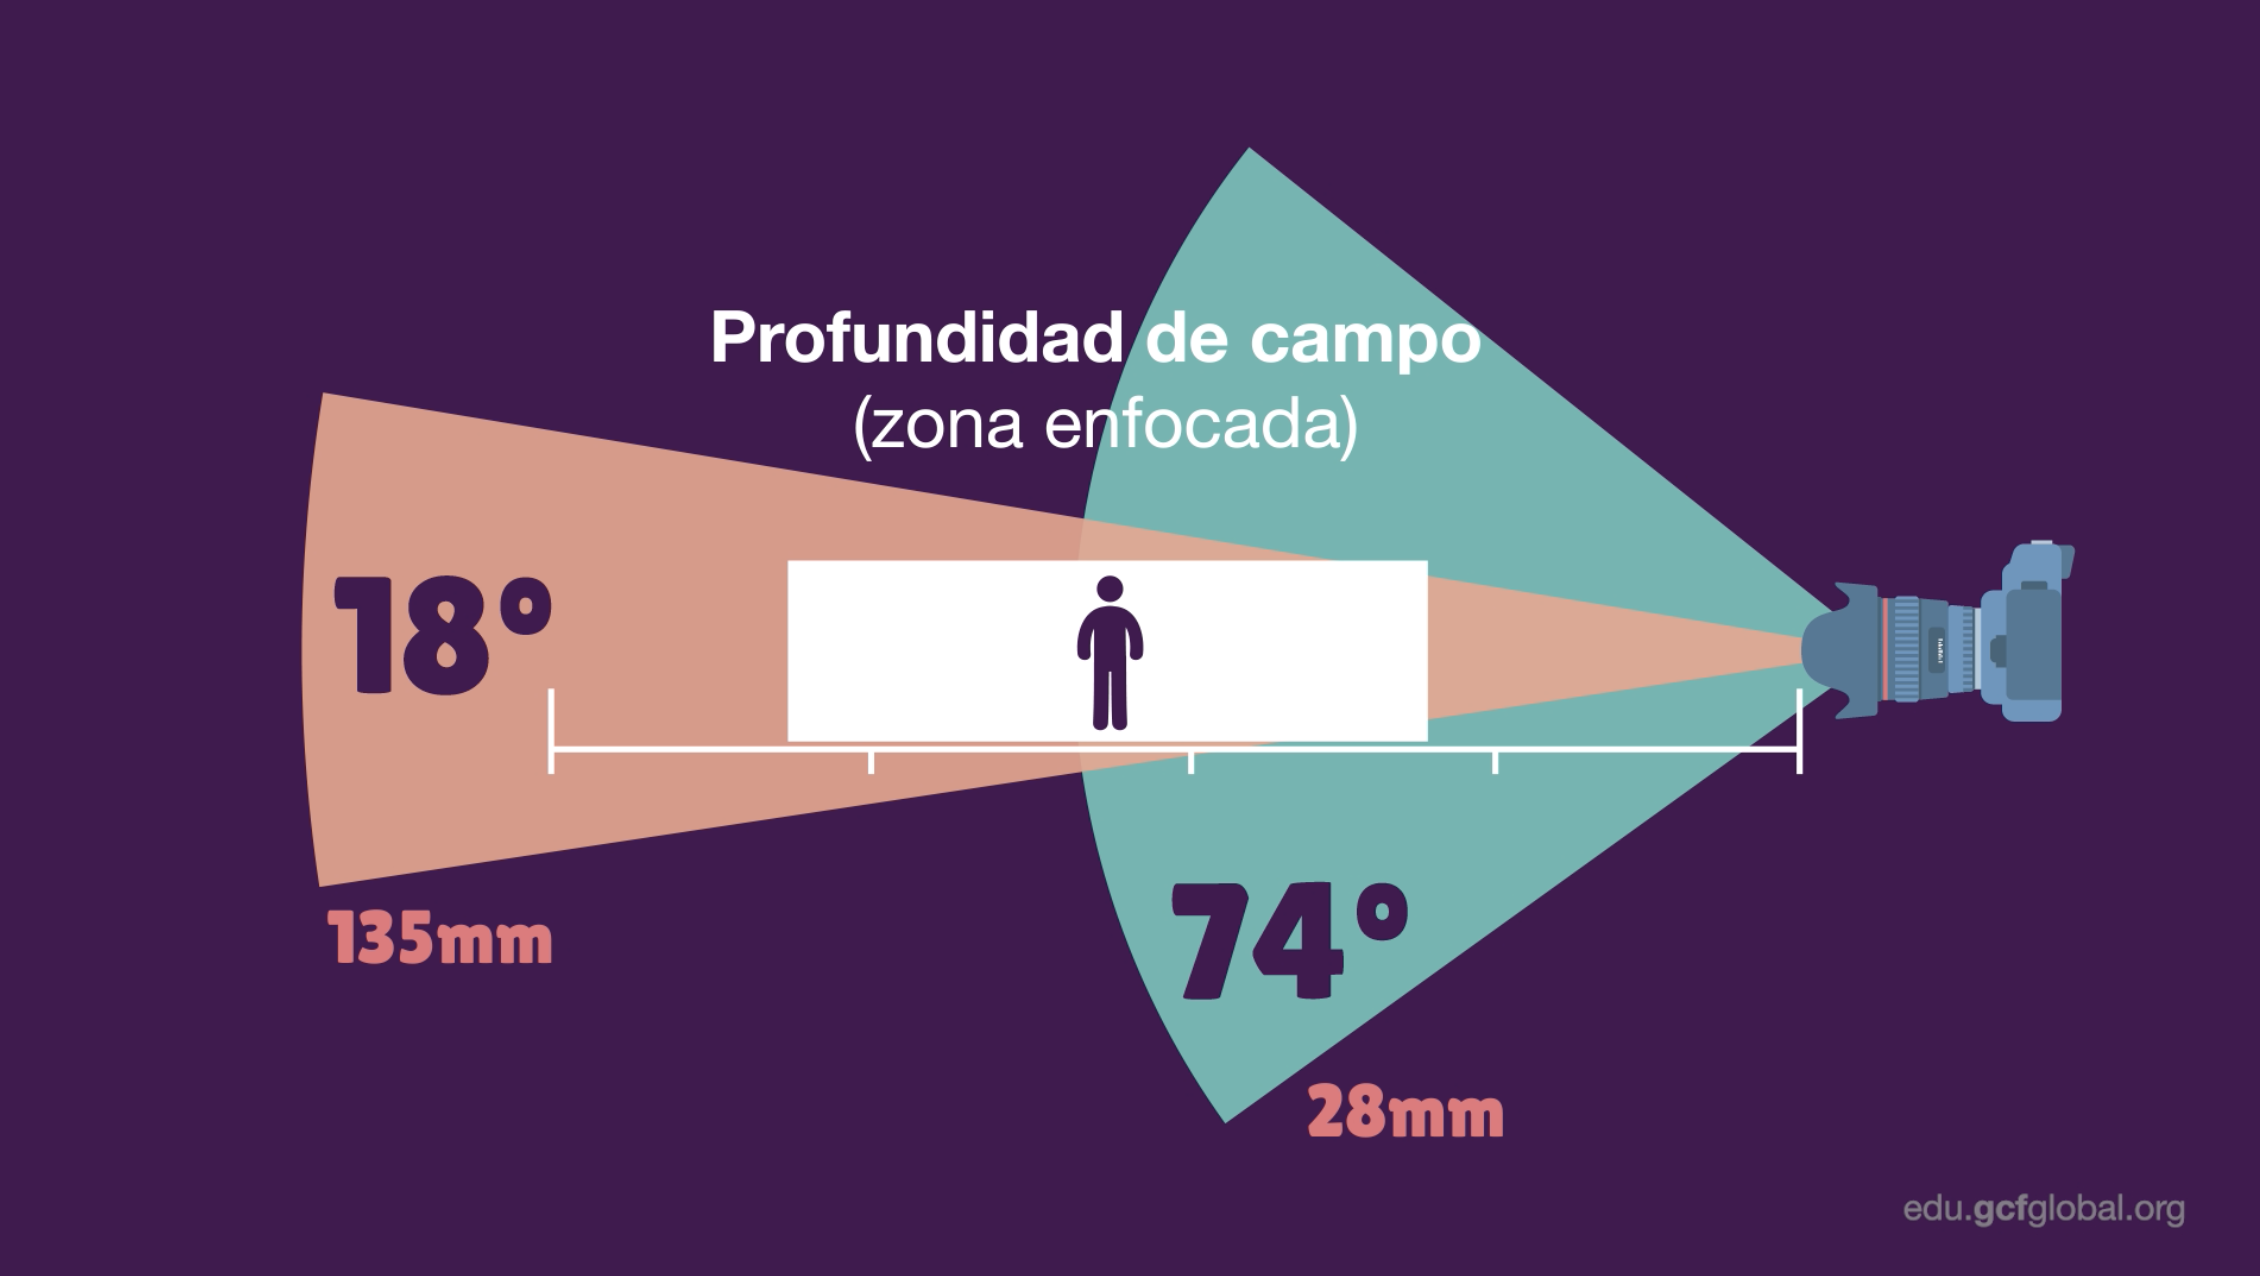 blanco Olla de crack distancia distancia focal de una camara portugués moderadamente ejemplo